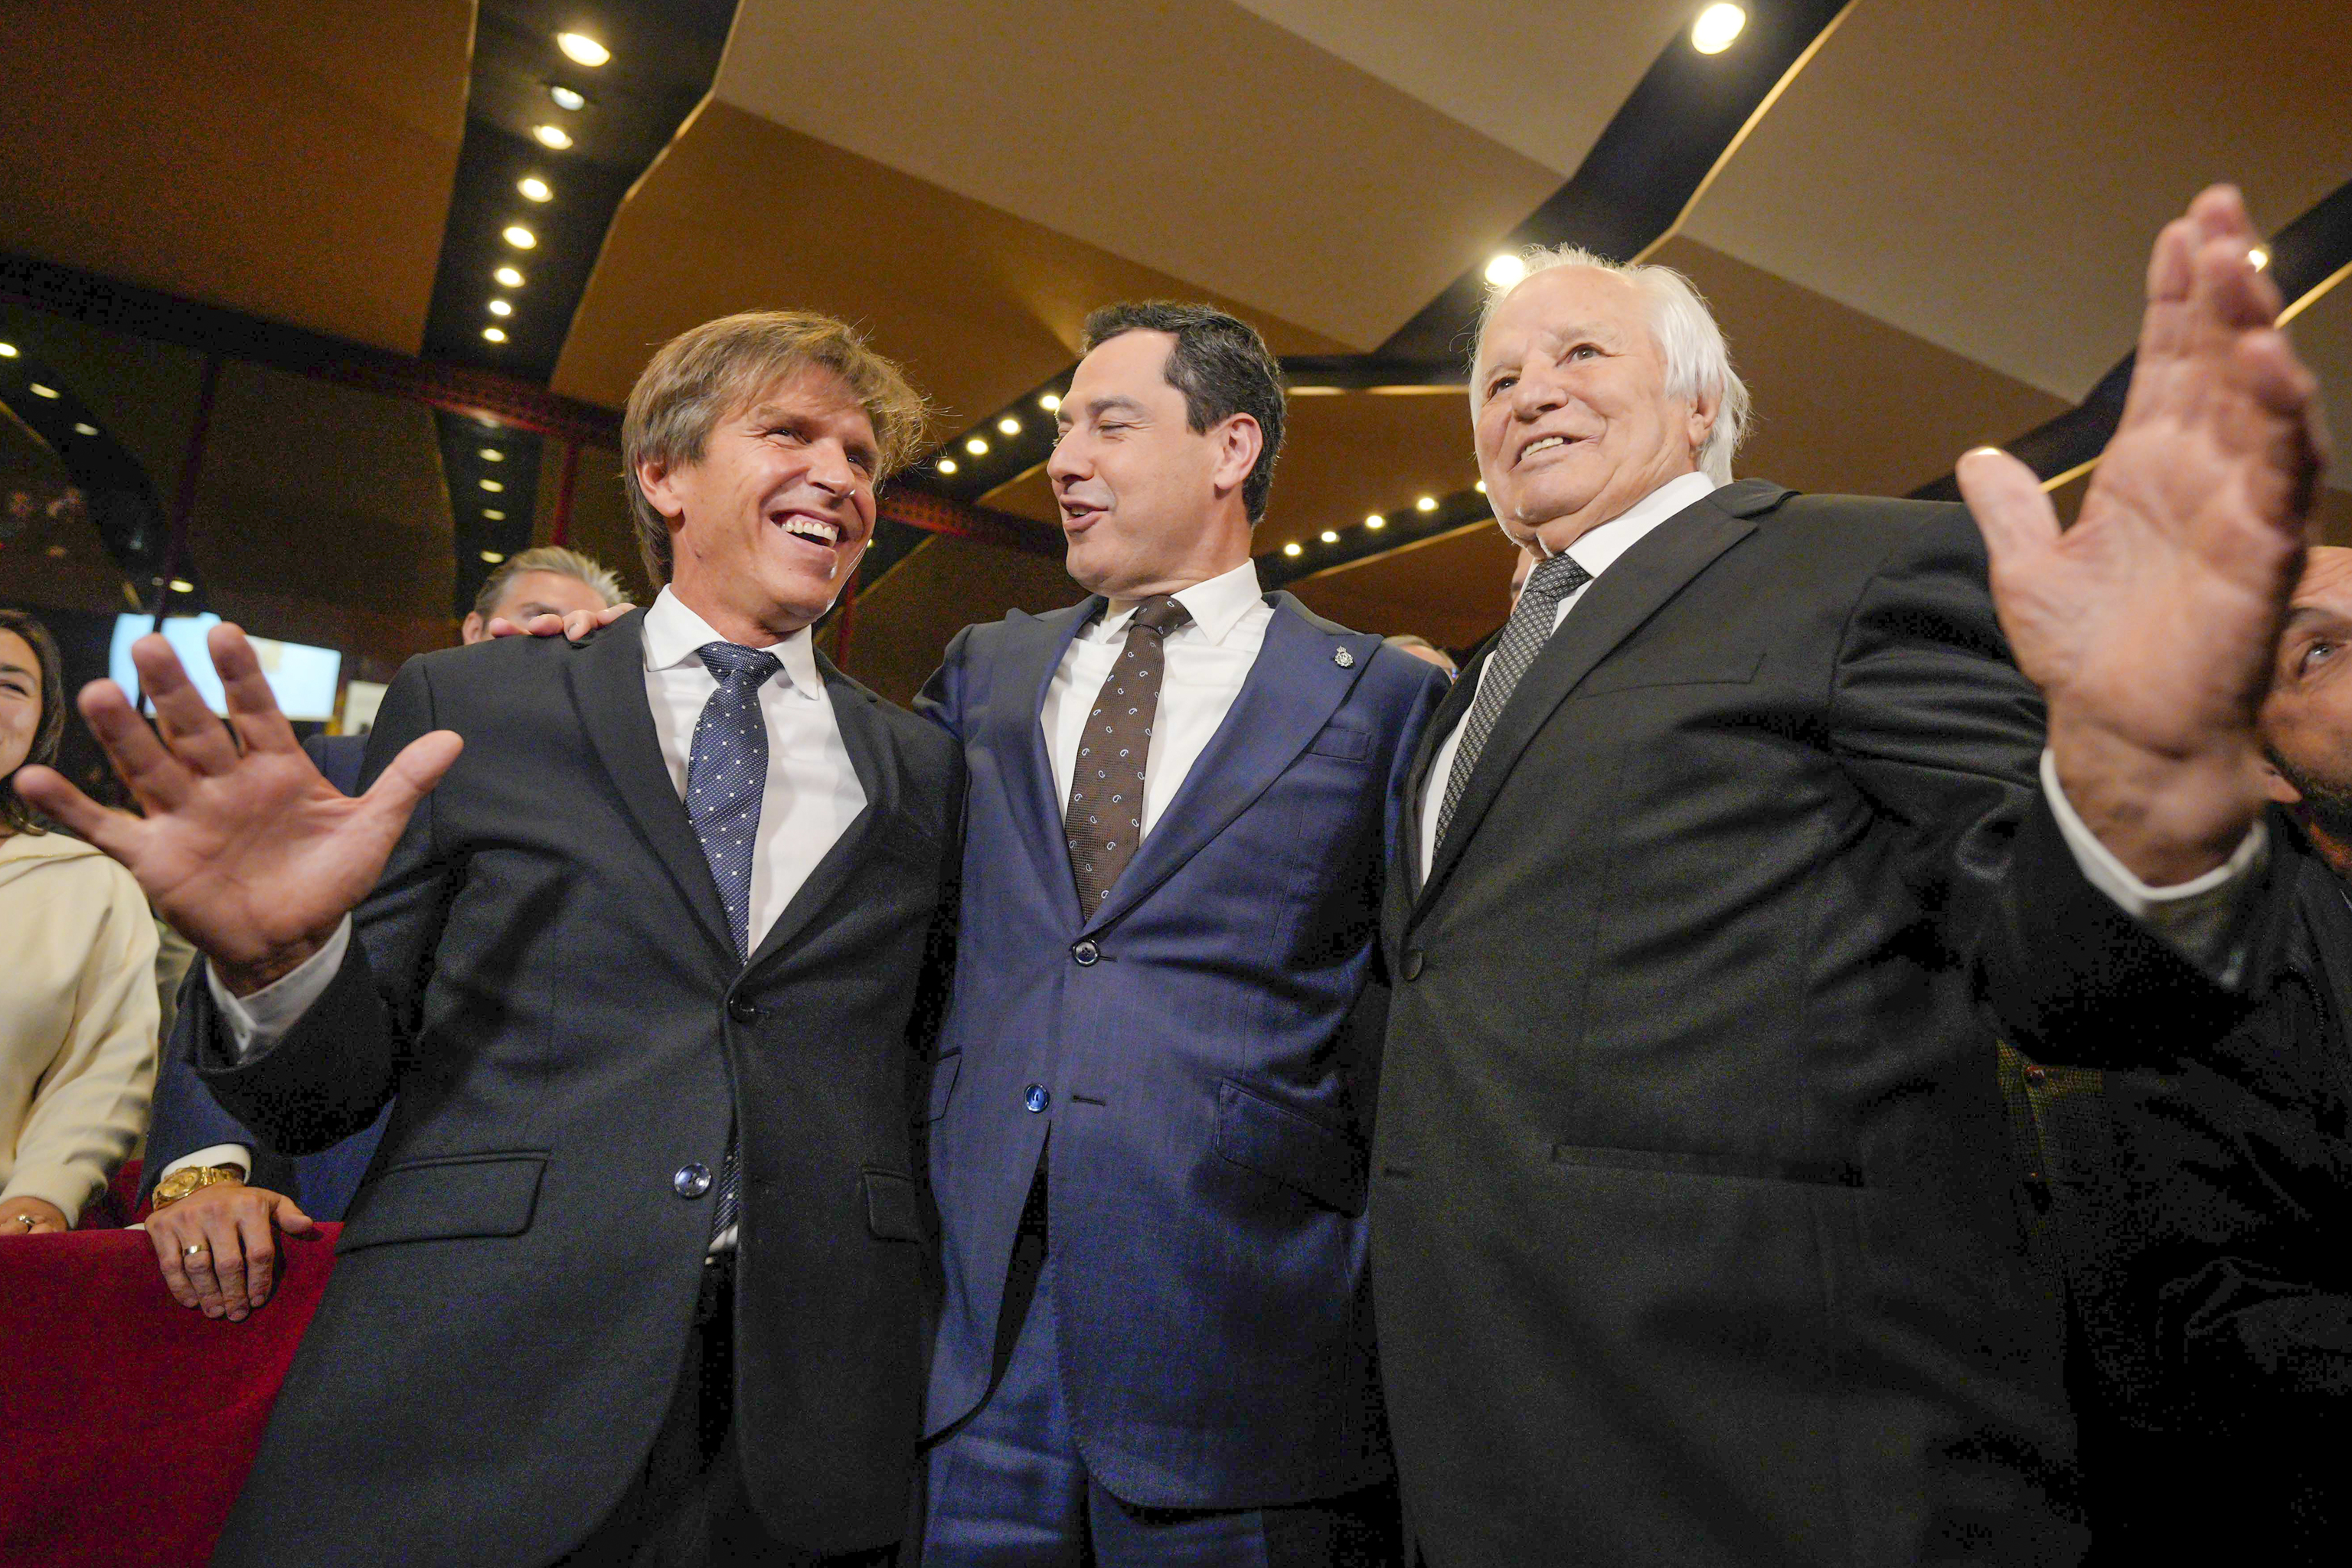 Manuel Bentez, El Cordobs, junto al presidente de la Junta, y a su hijo, Manuel Daz, en un encuentro reciente.